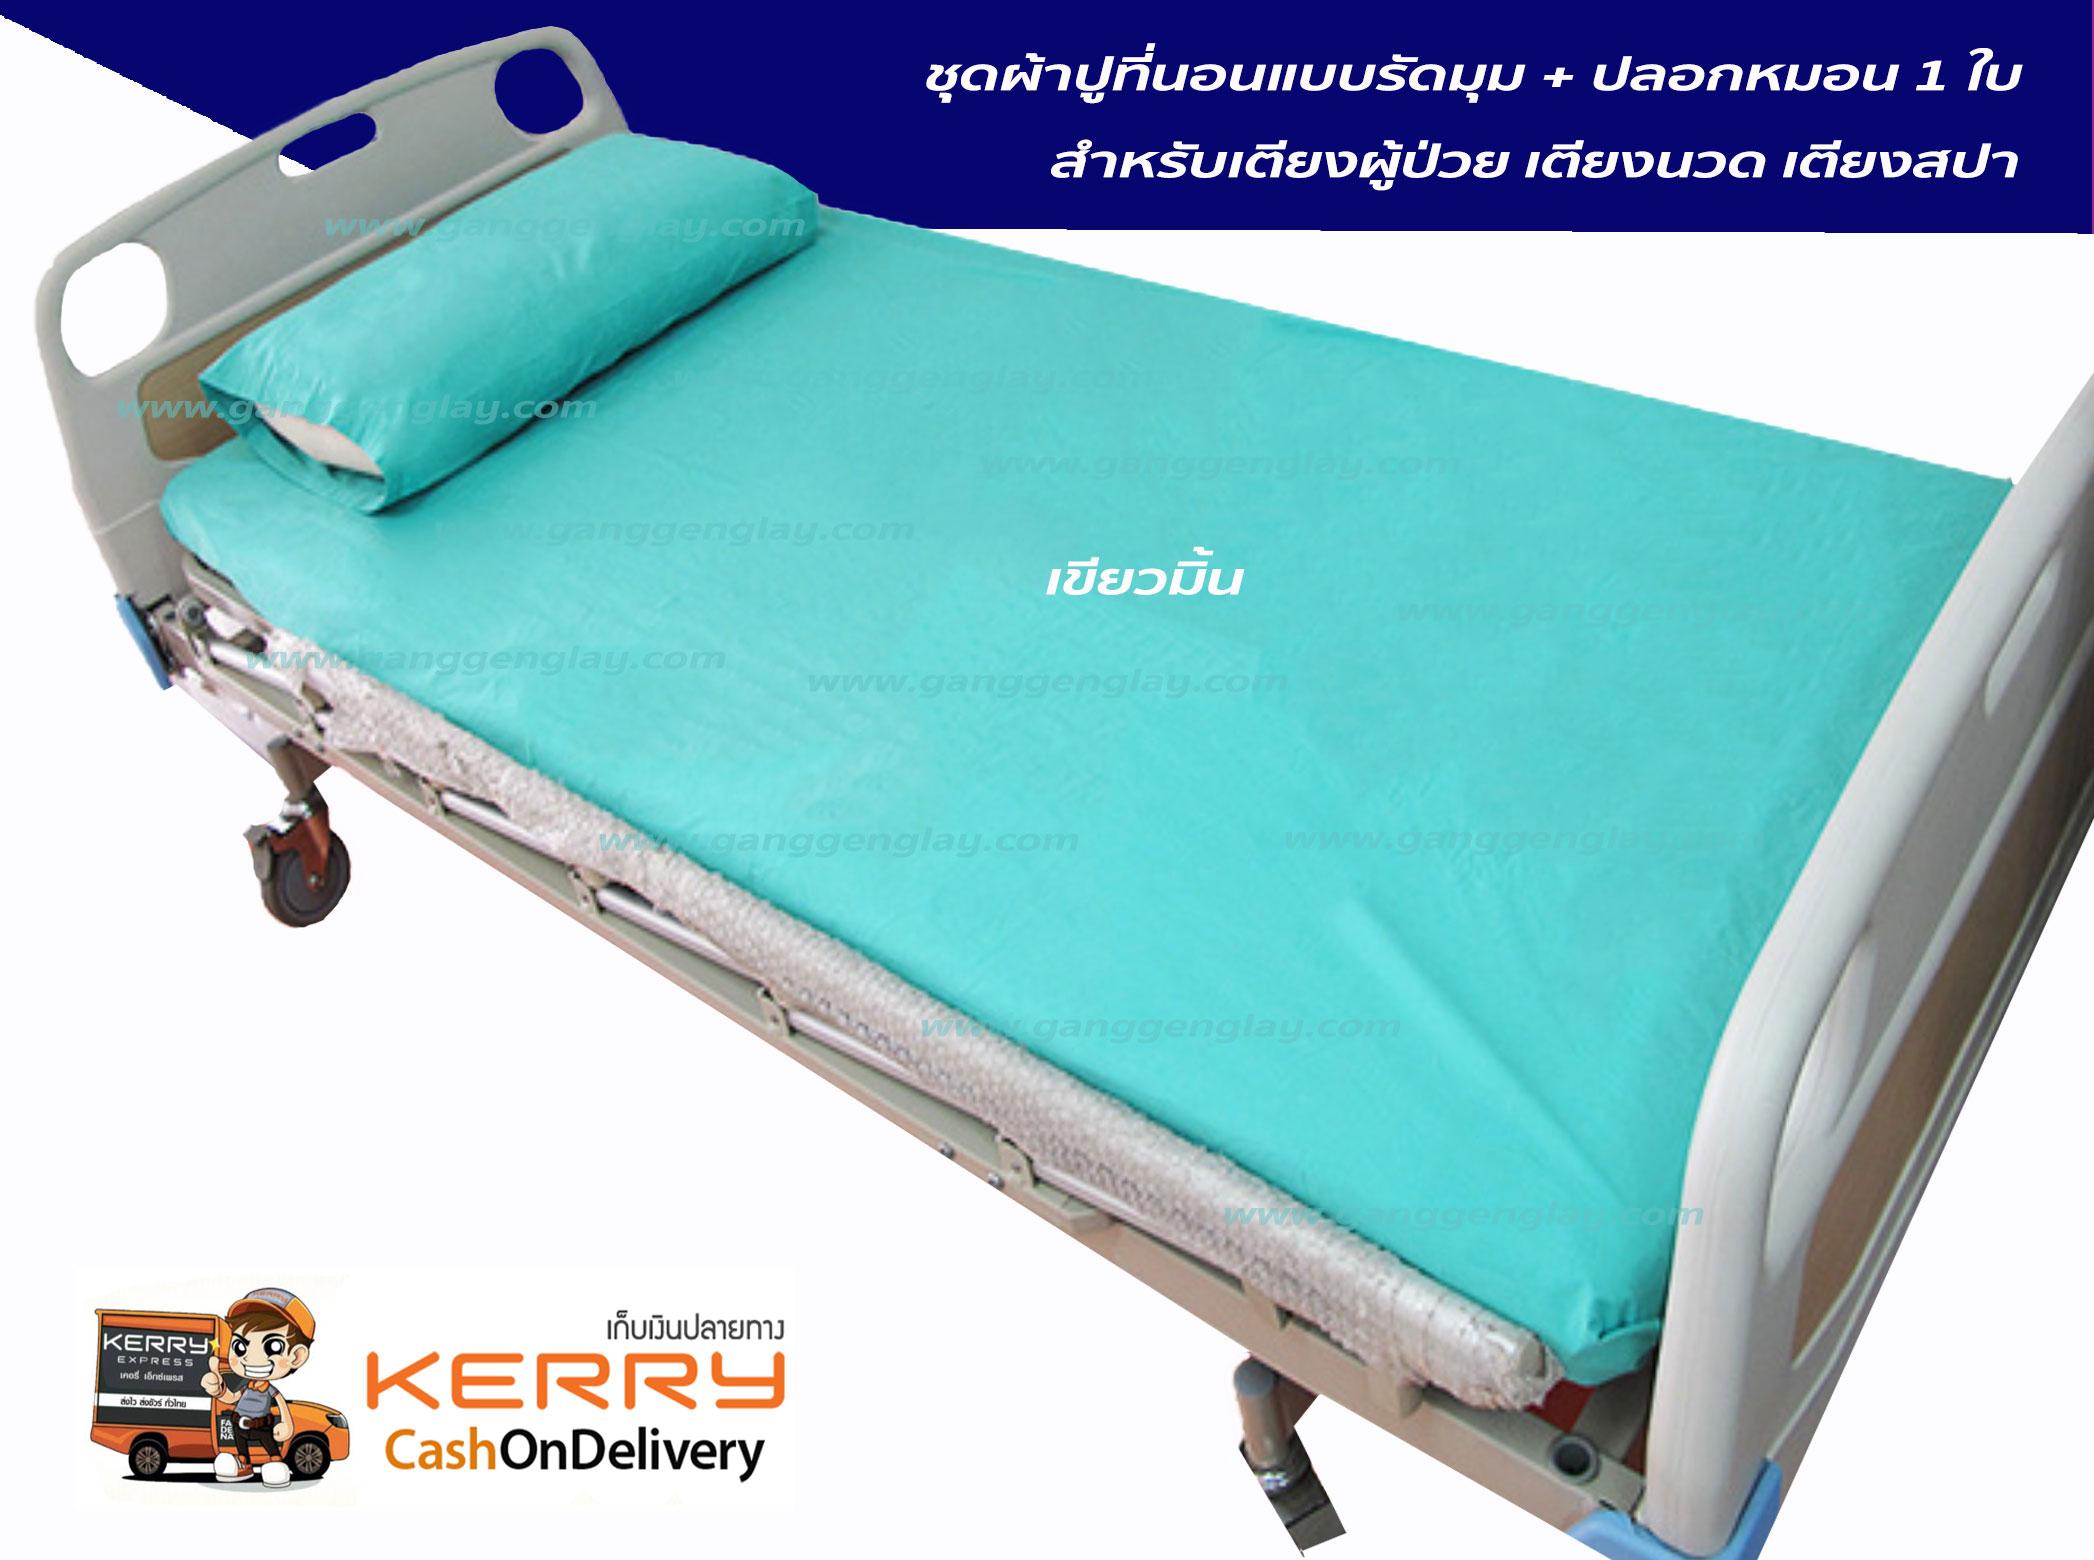 ผ้าปูที่นอน สำหรับเตียงผู้ป่วย เตียงนวด เตียงสปา + ปลอกหมอน 1 ใบ สีเขียวมิ้น